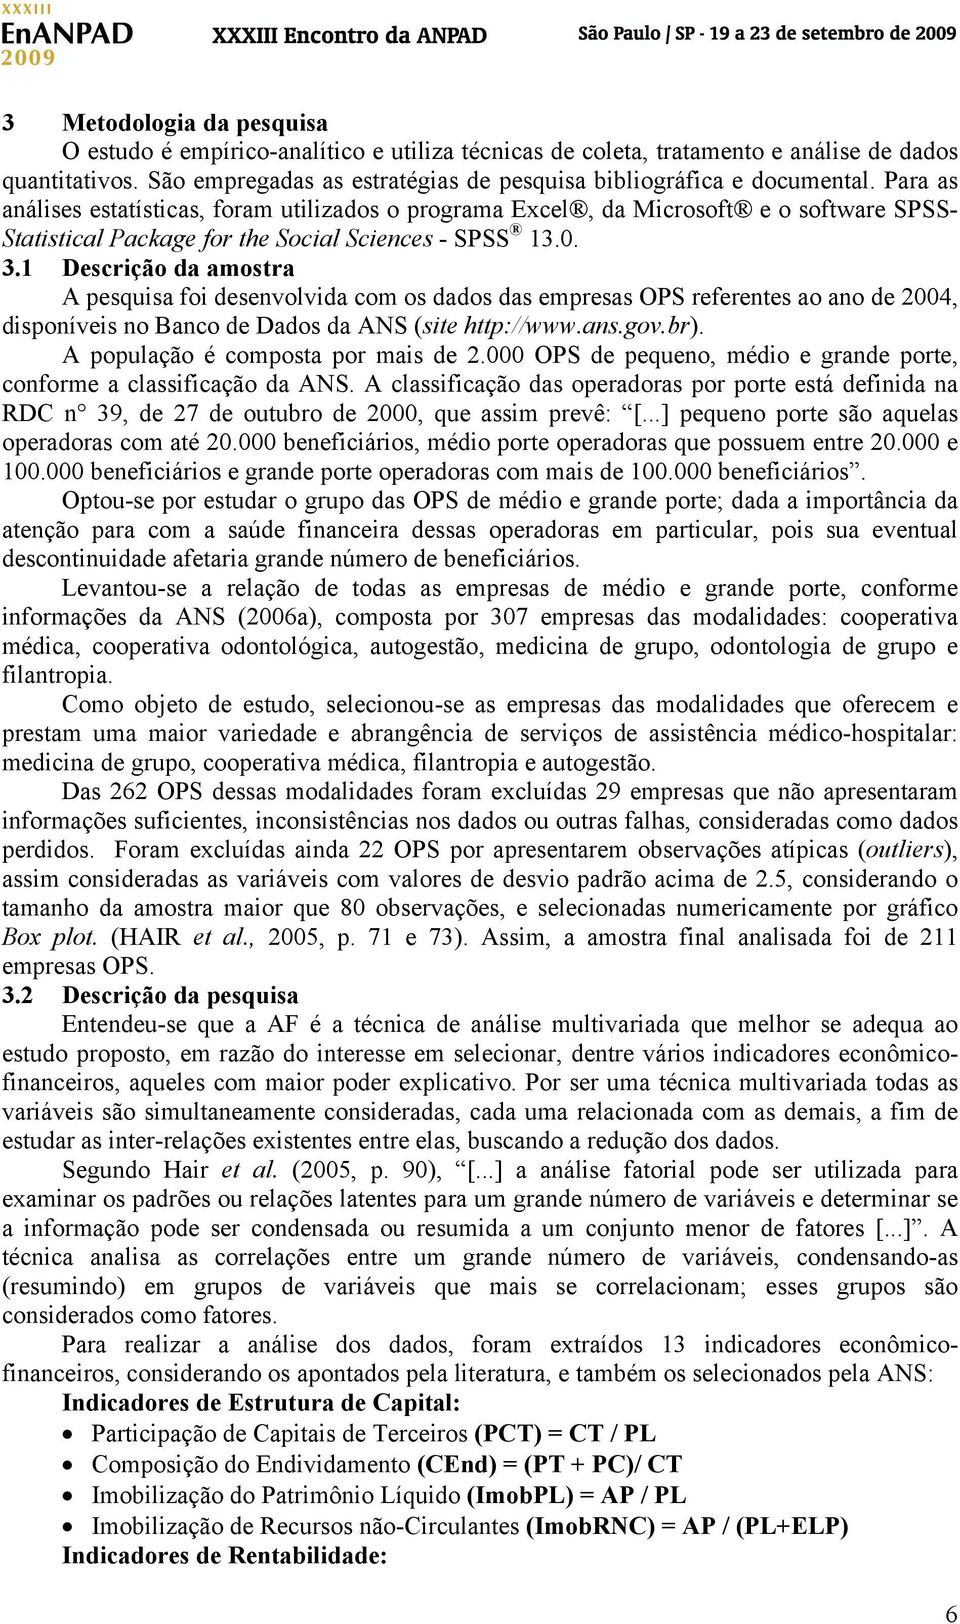 1 Descrição da amostra A pesquisa foi desenvolvida com os dados das empresas OPS referentes ao ano de 2004, disponíveis no Banco de Dados da ANS (site http://www.ans.gov.br).